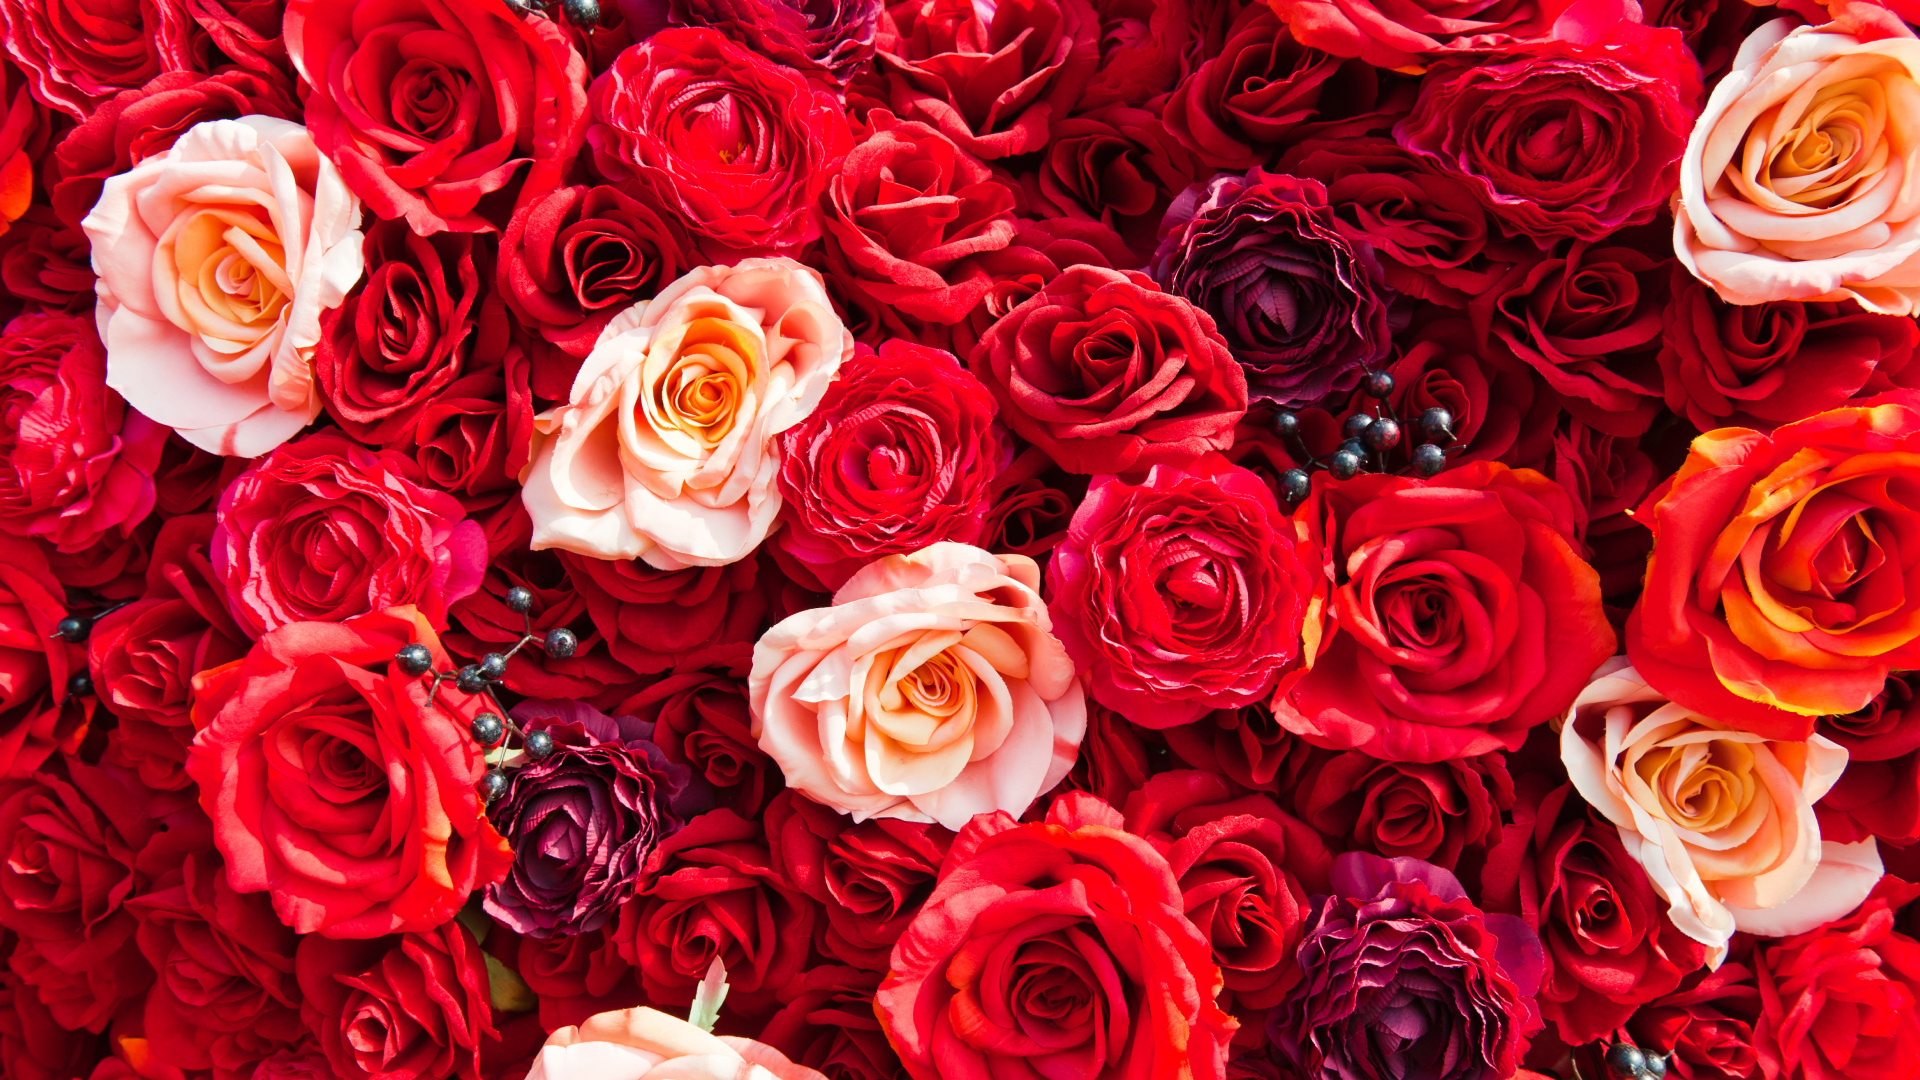 Обои сад роз, Роза, цветок, красный цвет, семья Роуз в разрешении 1920x1080